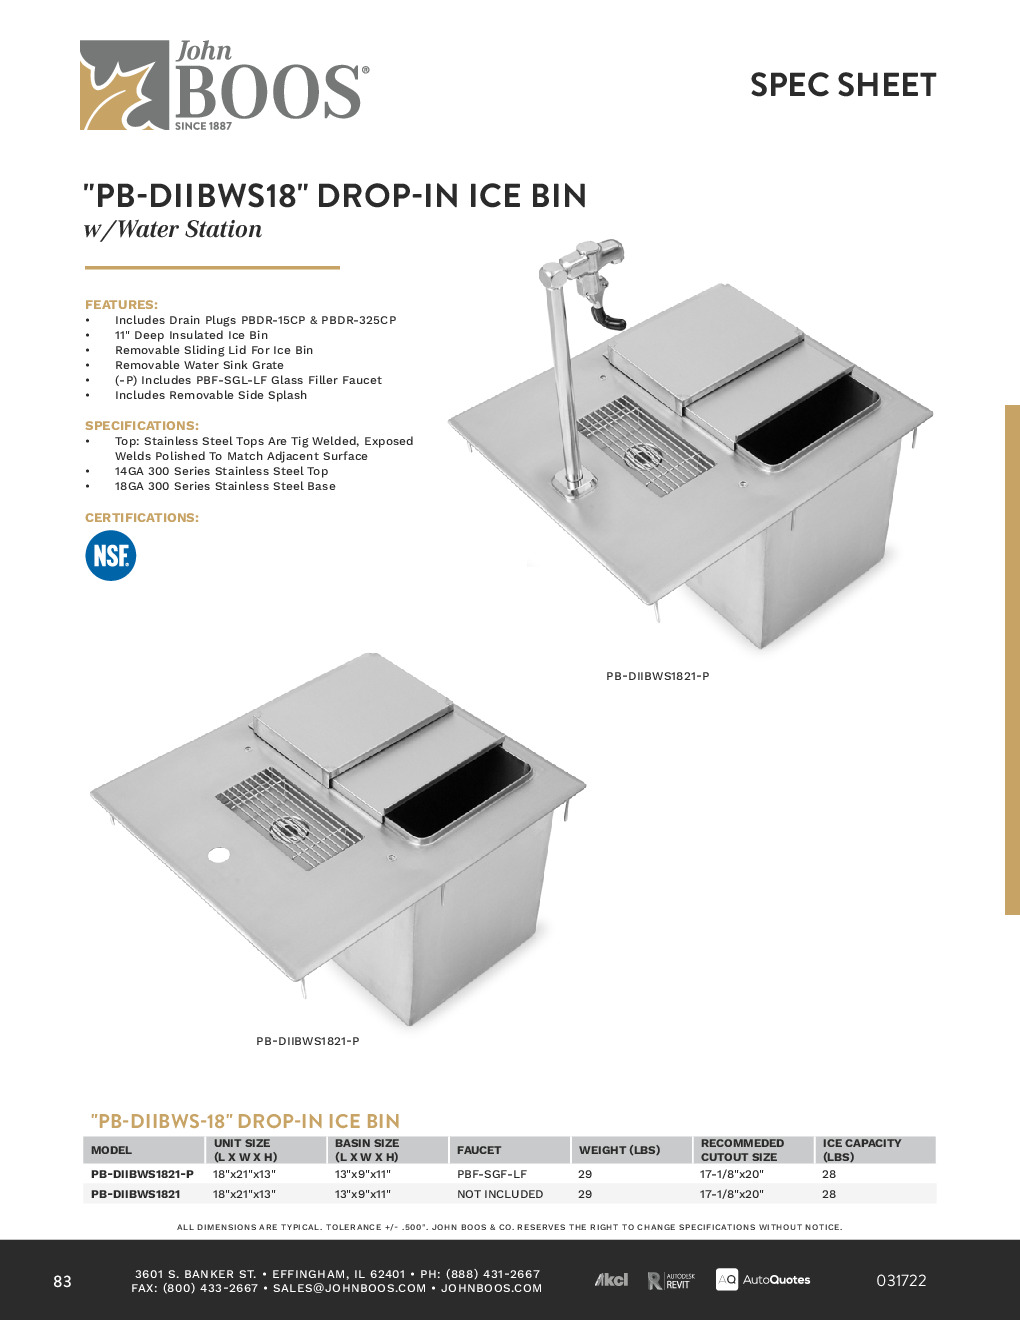 John Boos PB-DIIBWS1821-P-X Drop-in Water Station w/ Insulated Ice Bin